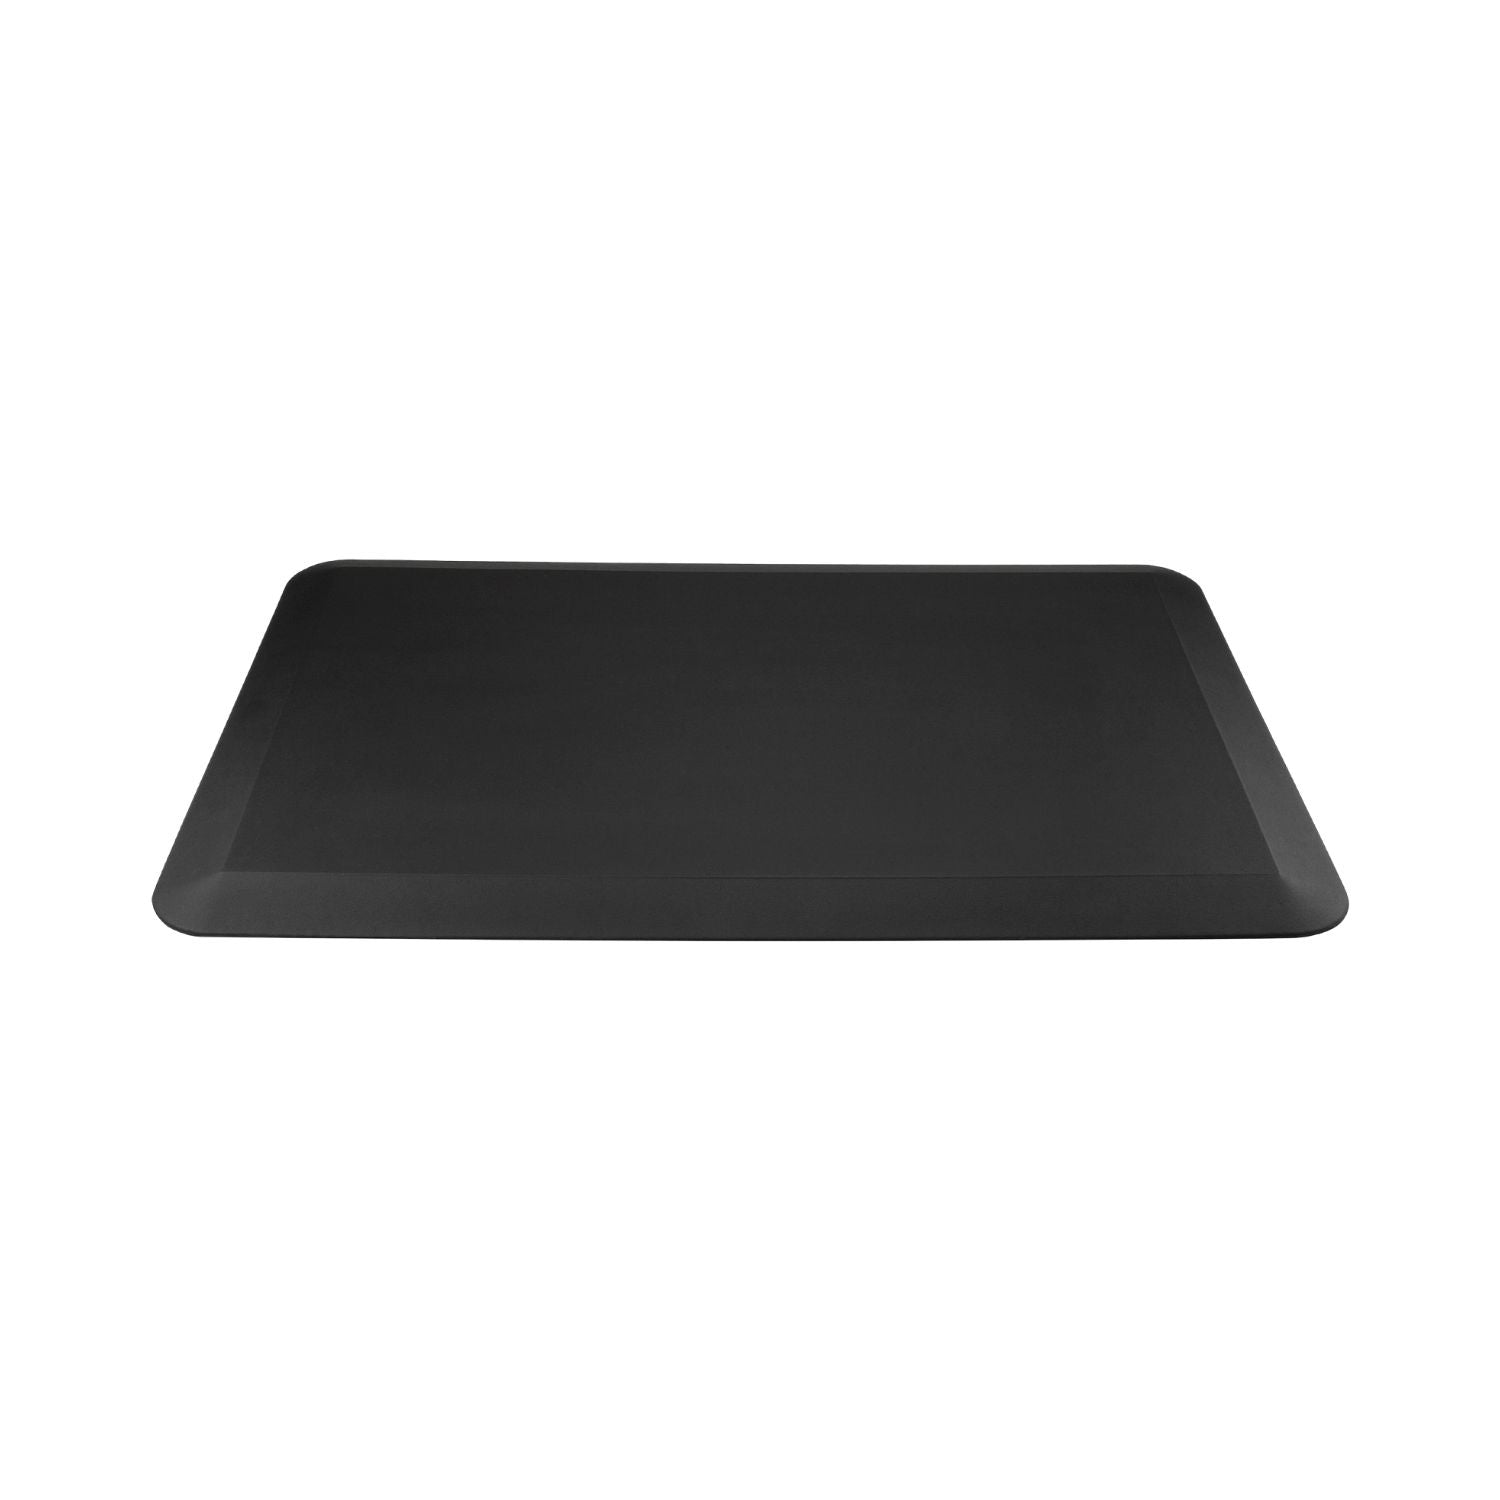 GOMINIMO 1 Pcs Anti Fatigue Floor Mat (Black, 50cm x 80cm x 1.9cm)